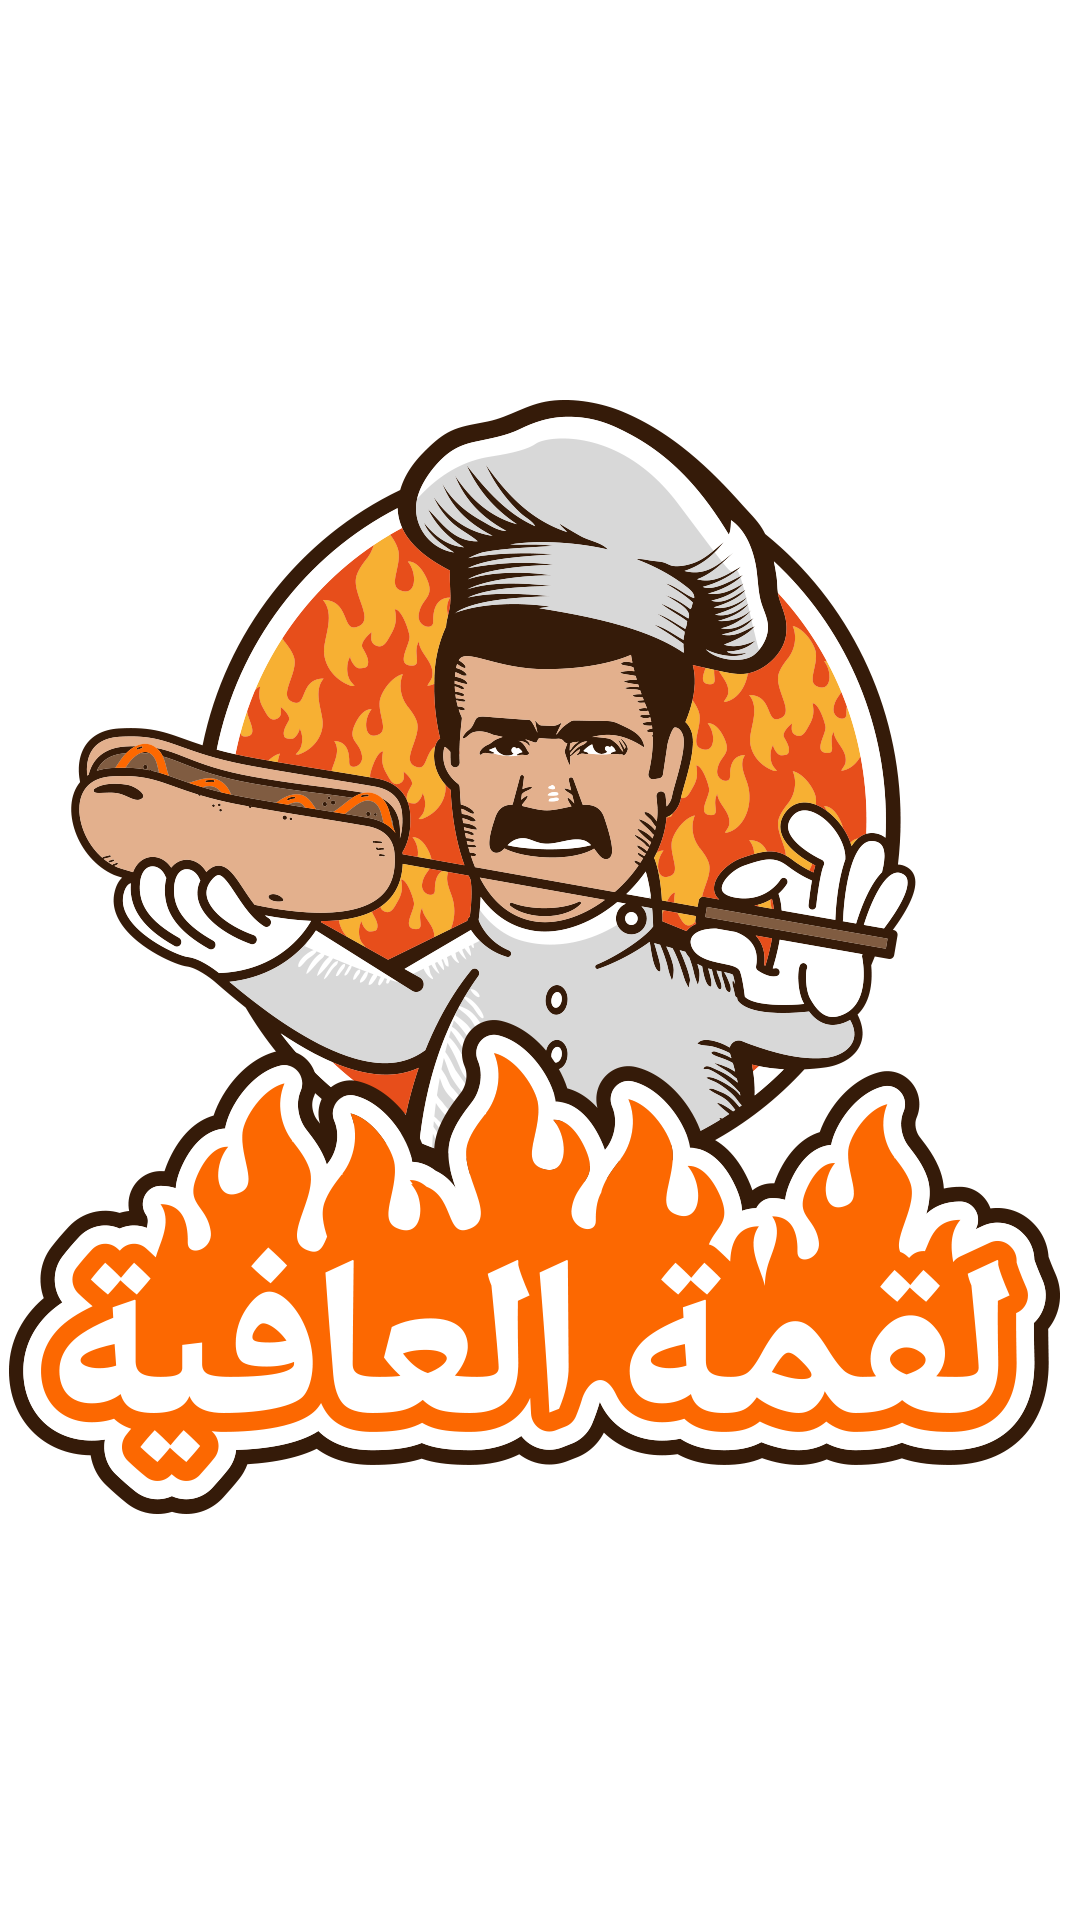 لقمة مطعم مطاعم اماراتية